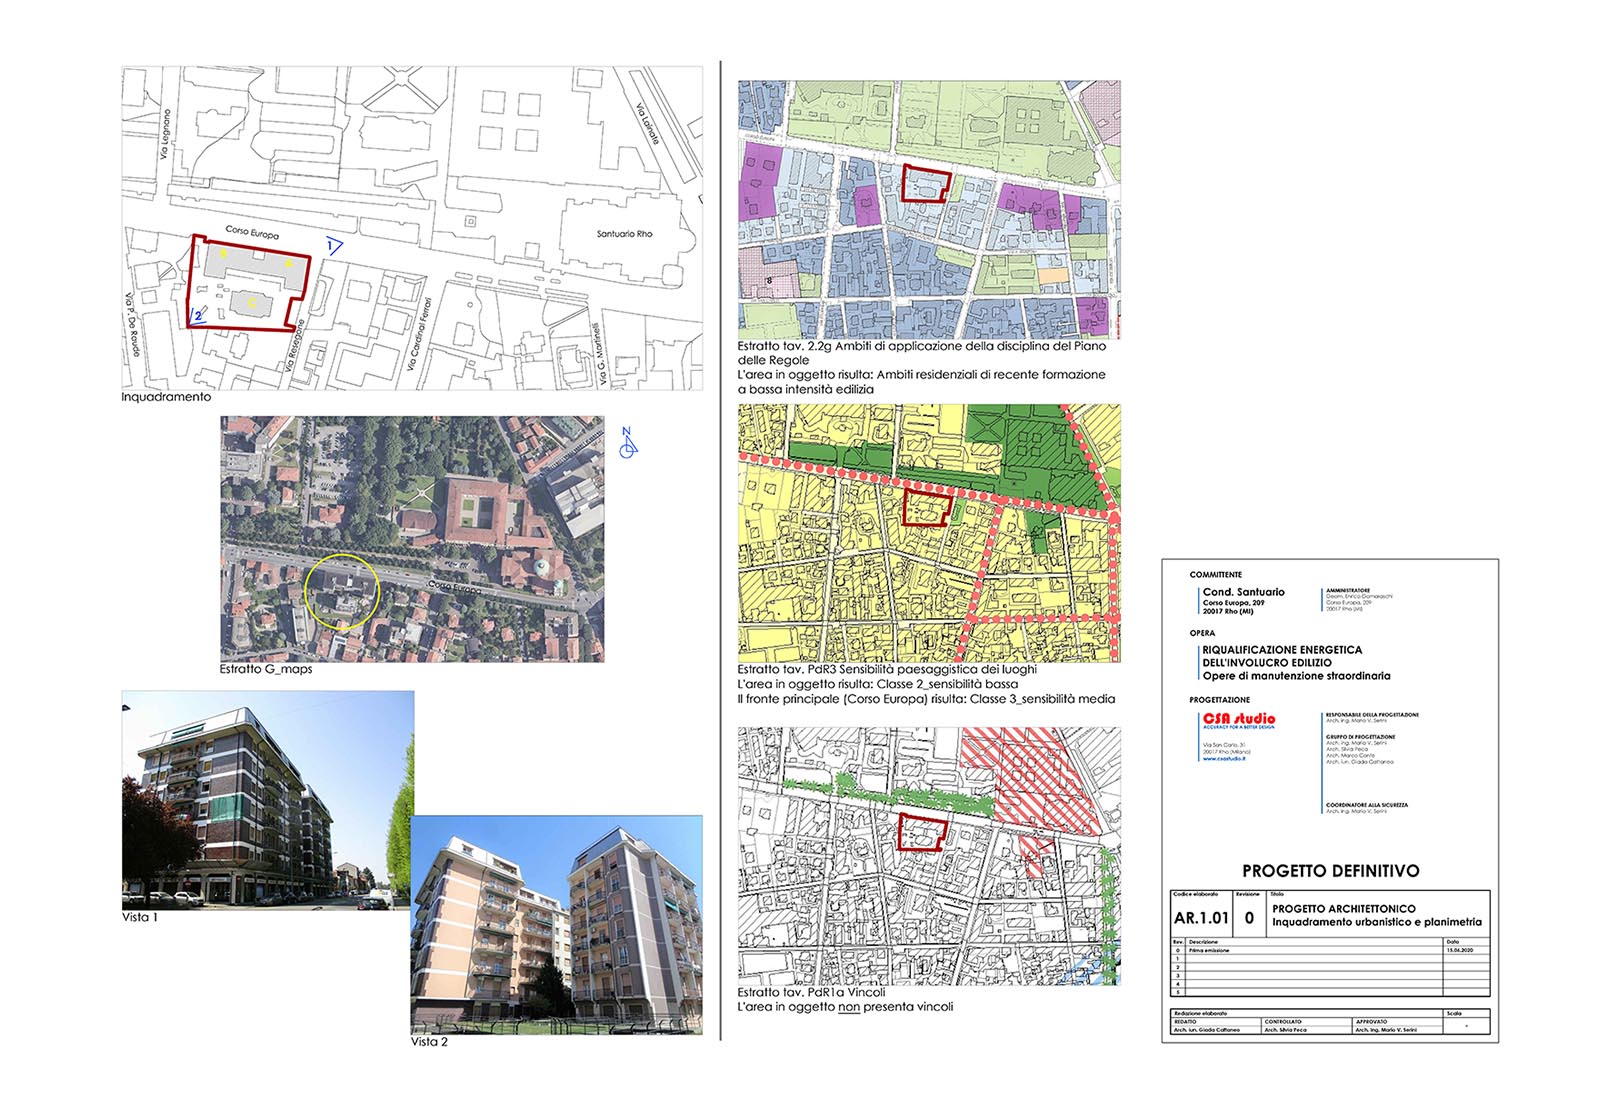 Residential ensemble in Europa street in Rho - Site plan